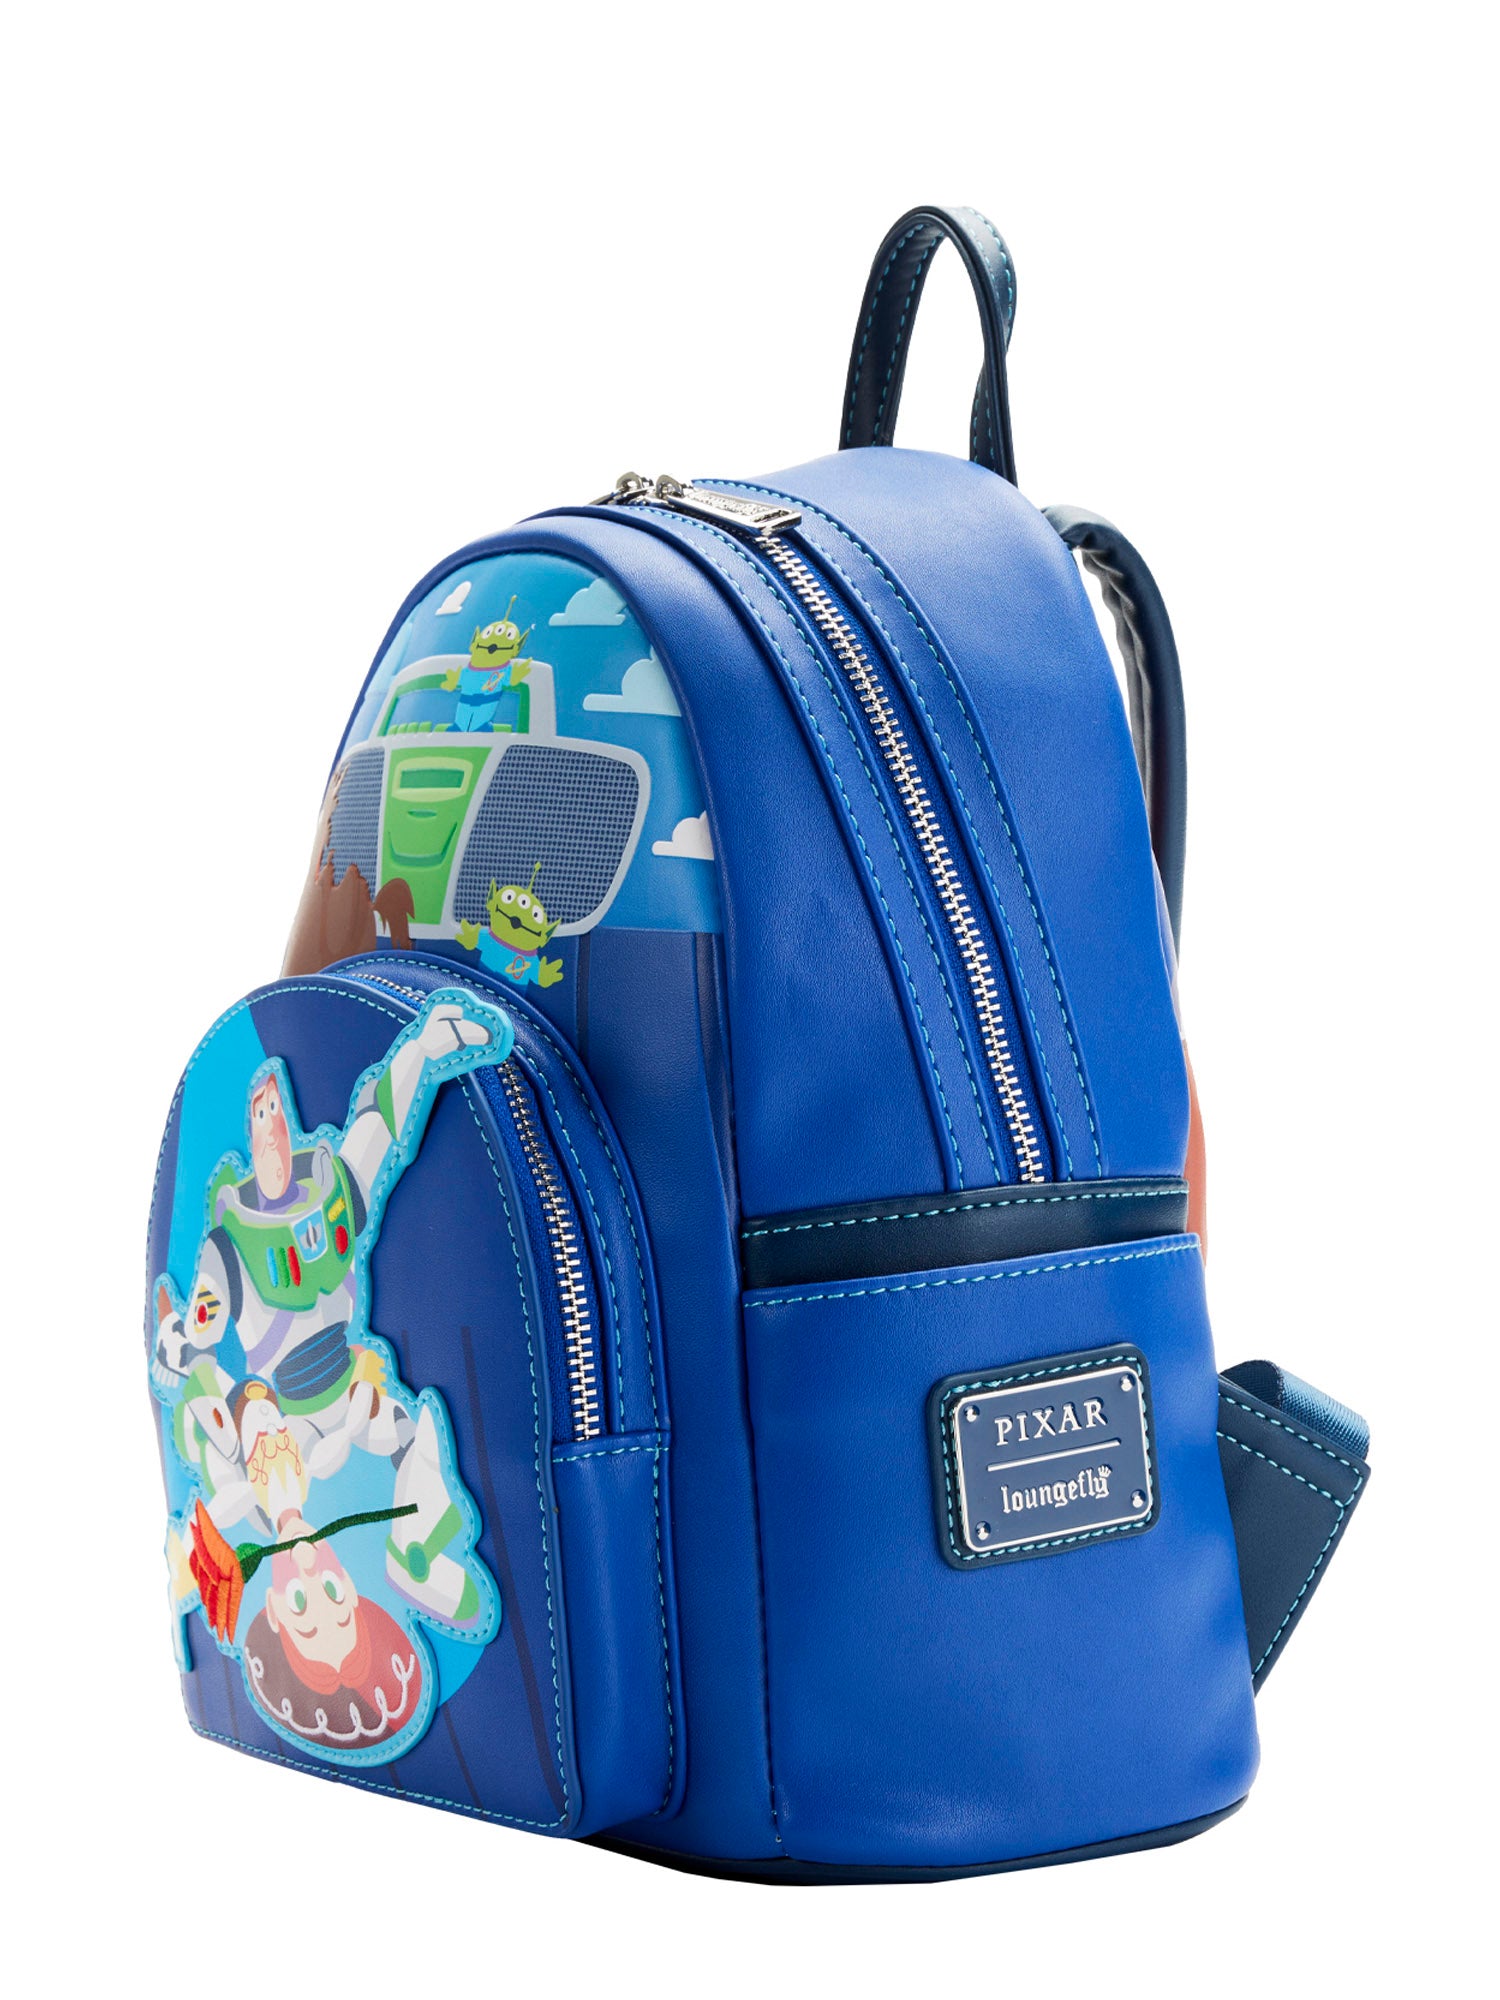 Loungefly x Pixar Toy Story Mini Backpack Handbag Buzz Lightyear & Jessie